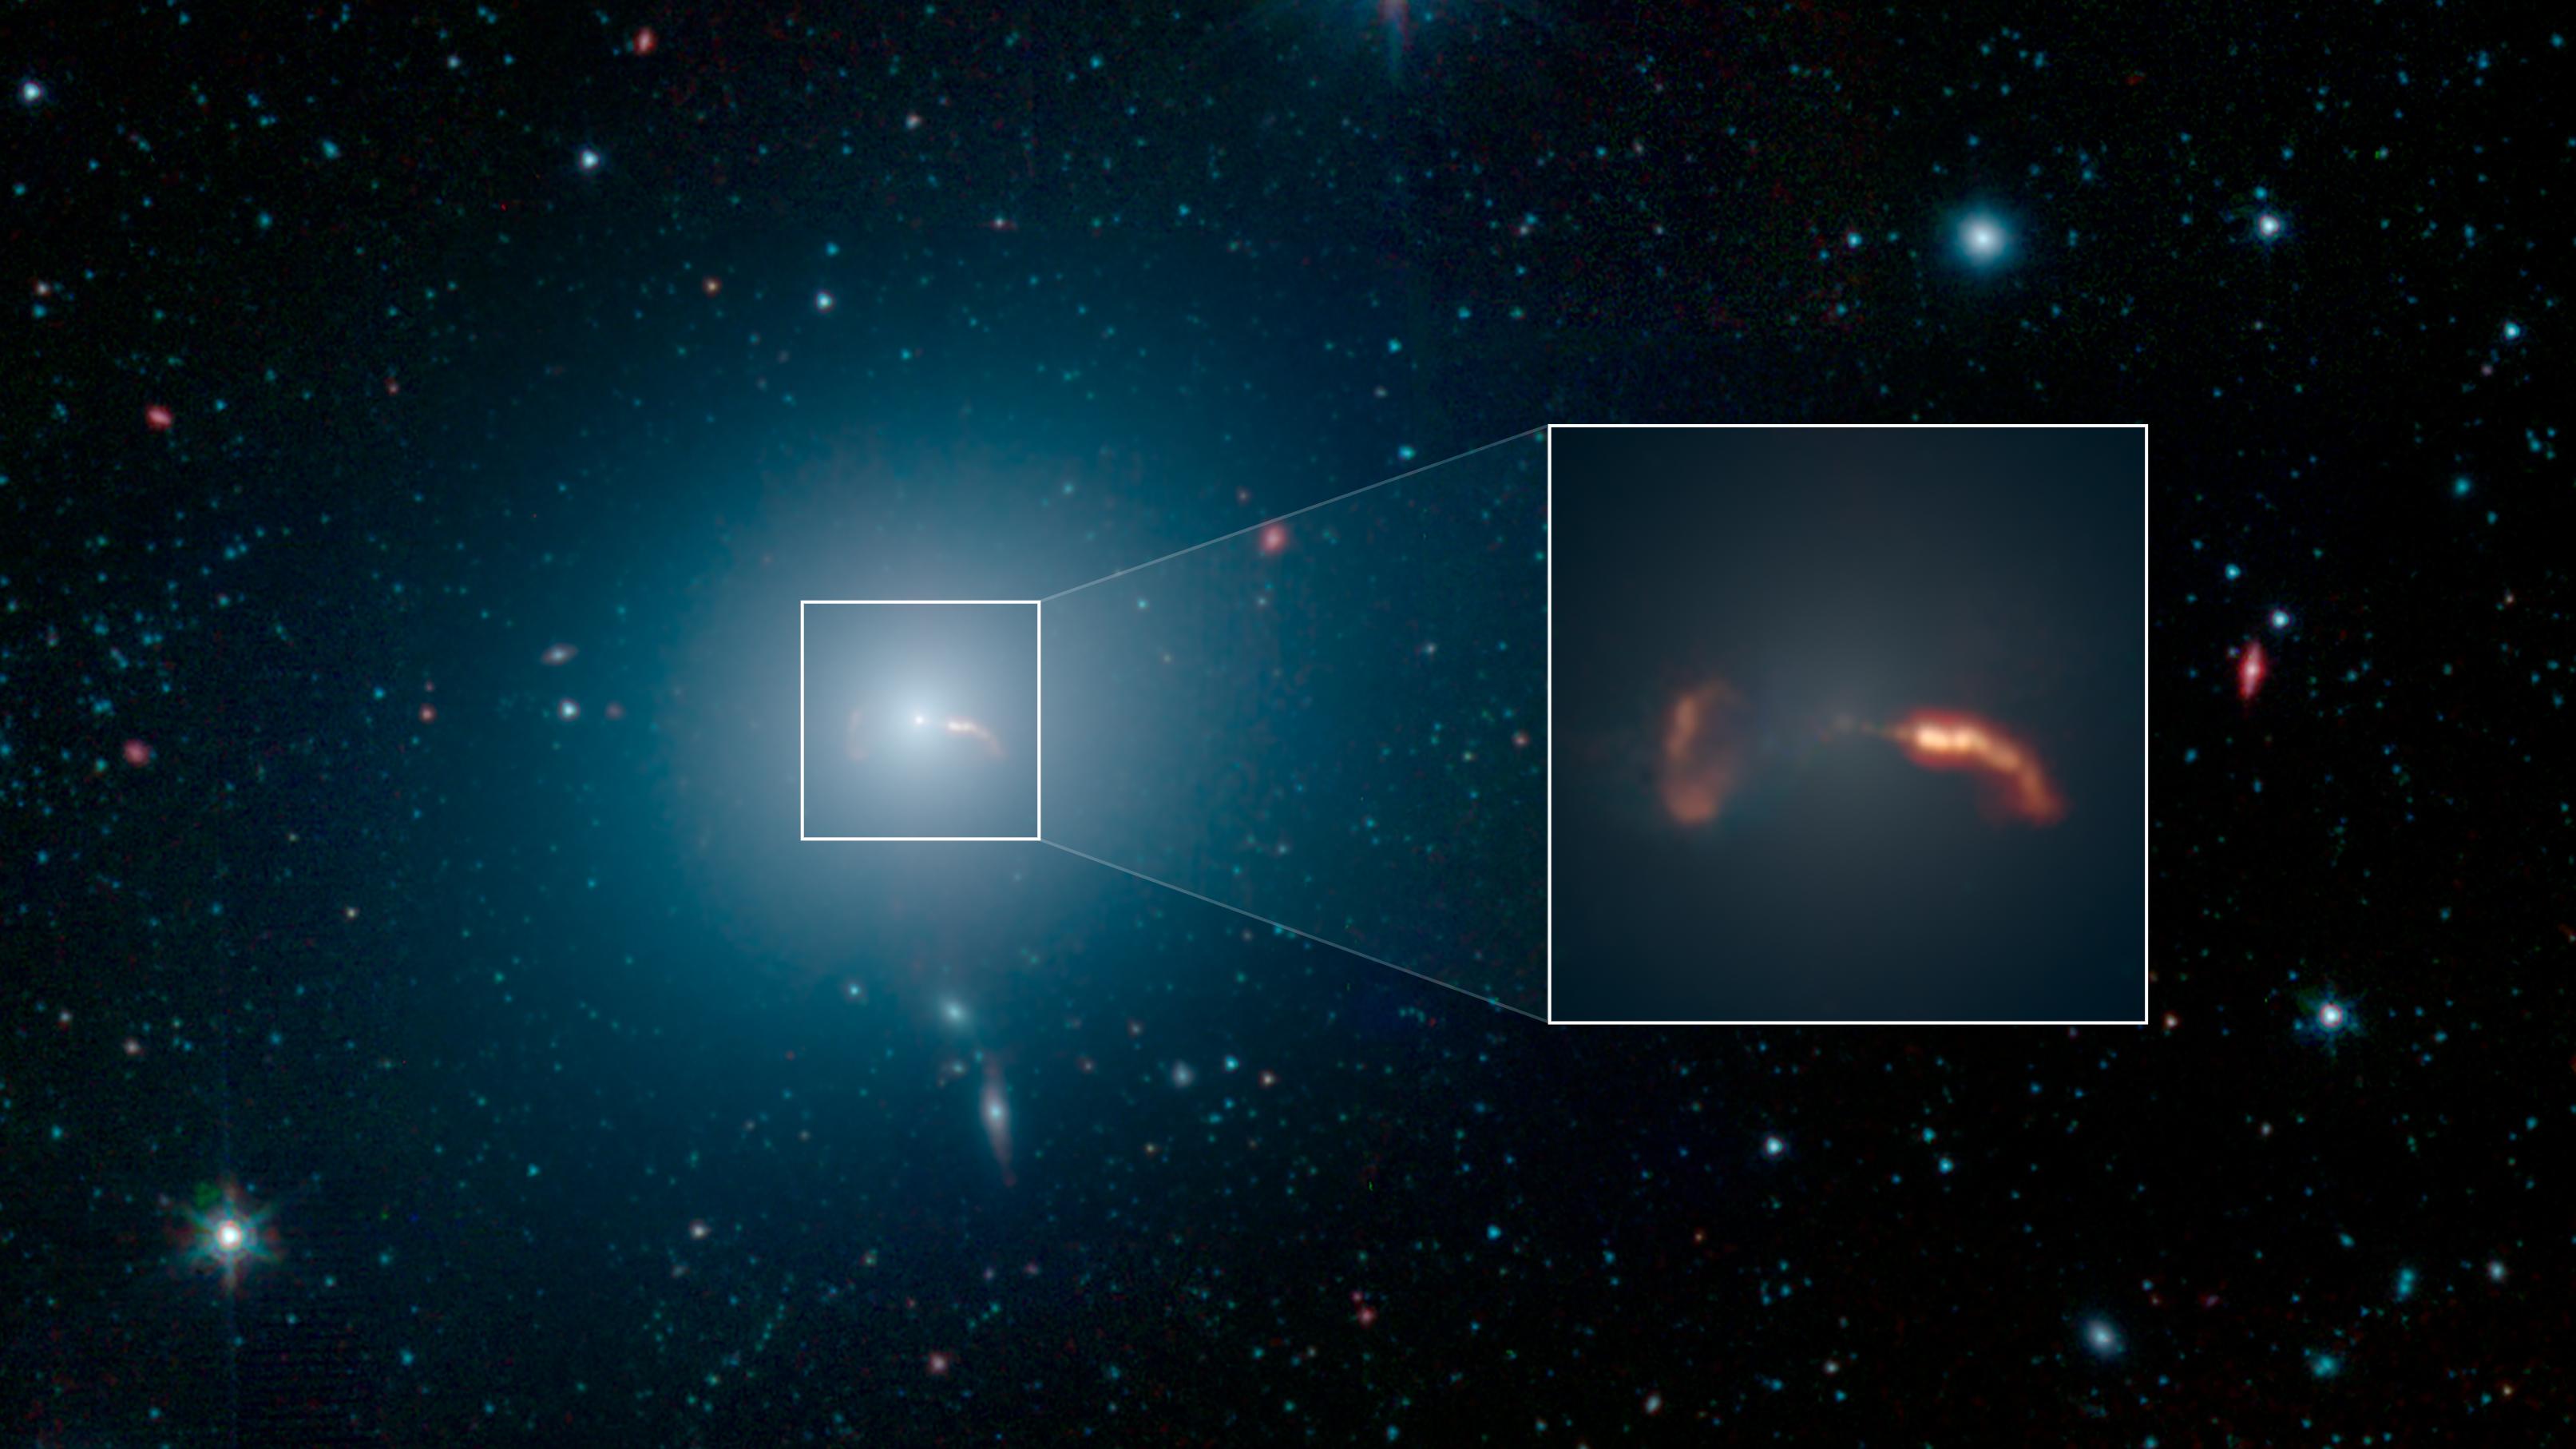 Den gigantiske M87 galakse og jettene fra det sorte hul som Event Horizon Telescope så sidste måned